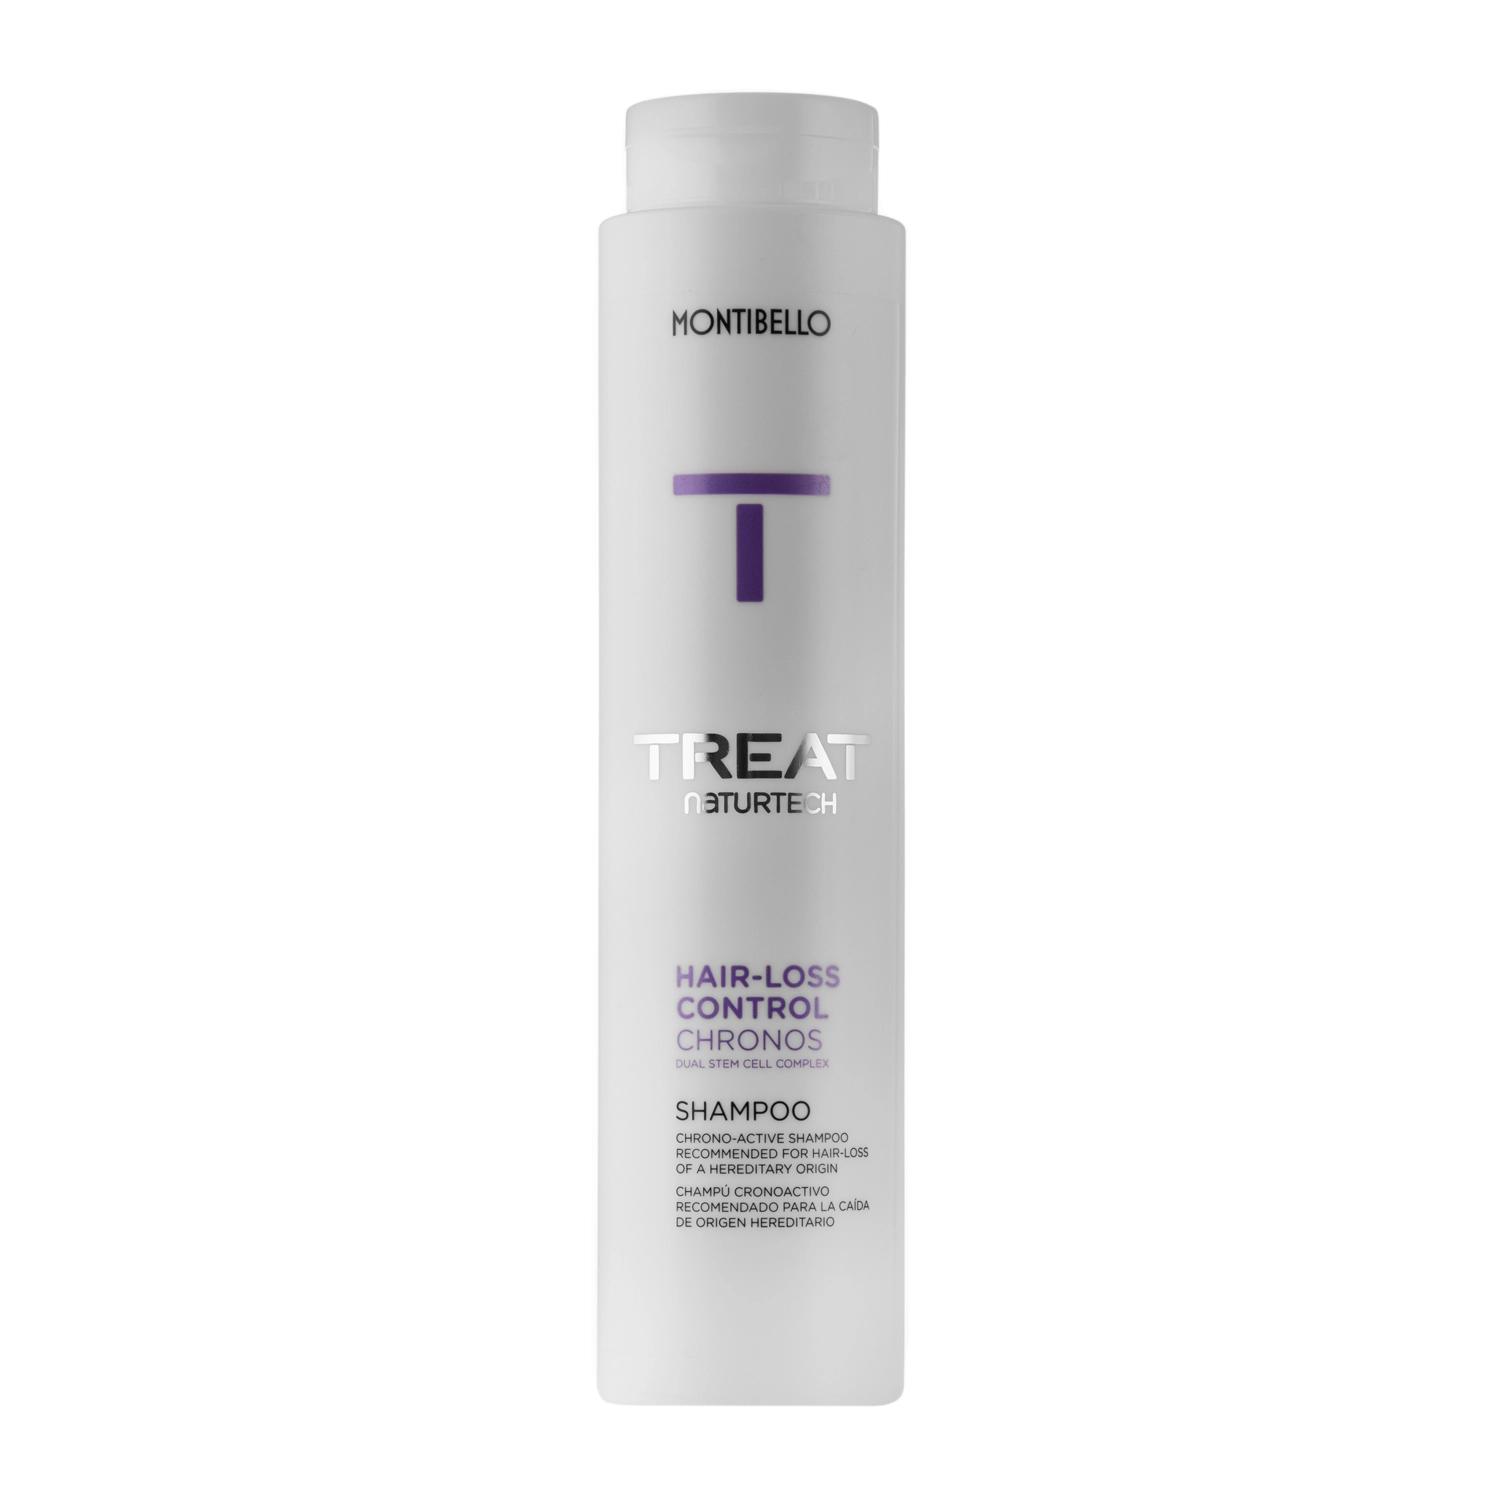 montibello hair-loss chronos shampoo szampon przeciw wypadaniu włosów